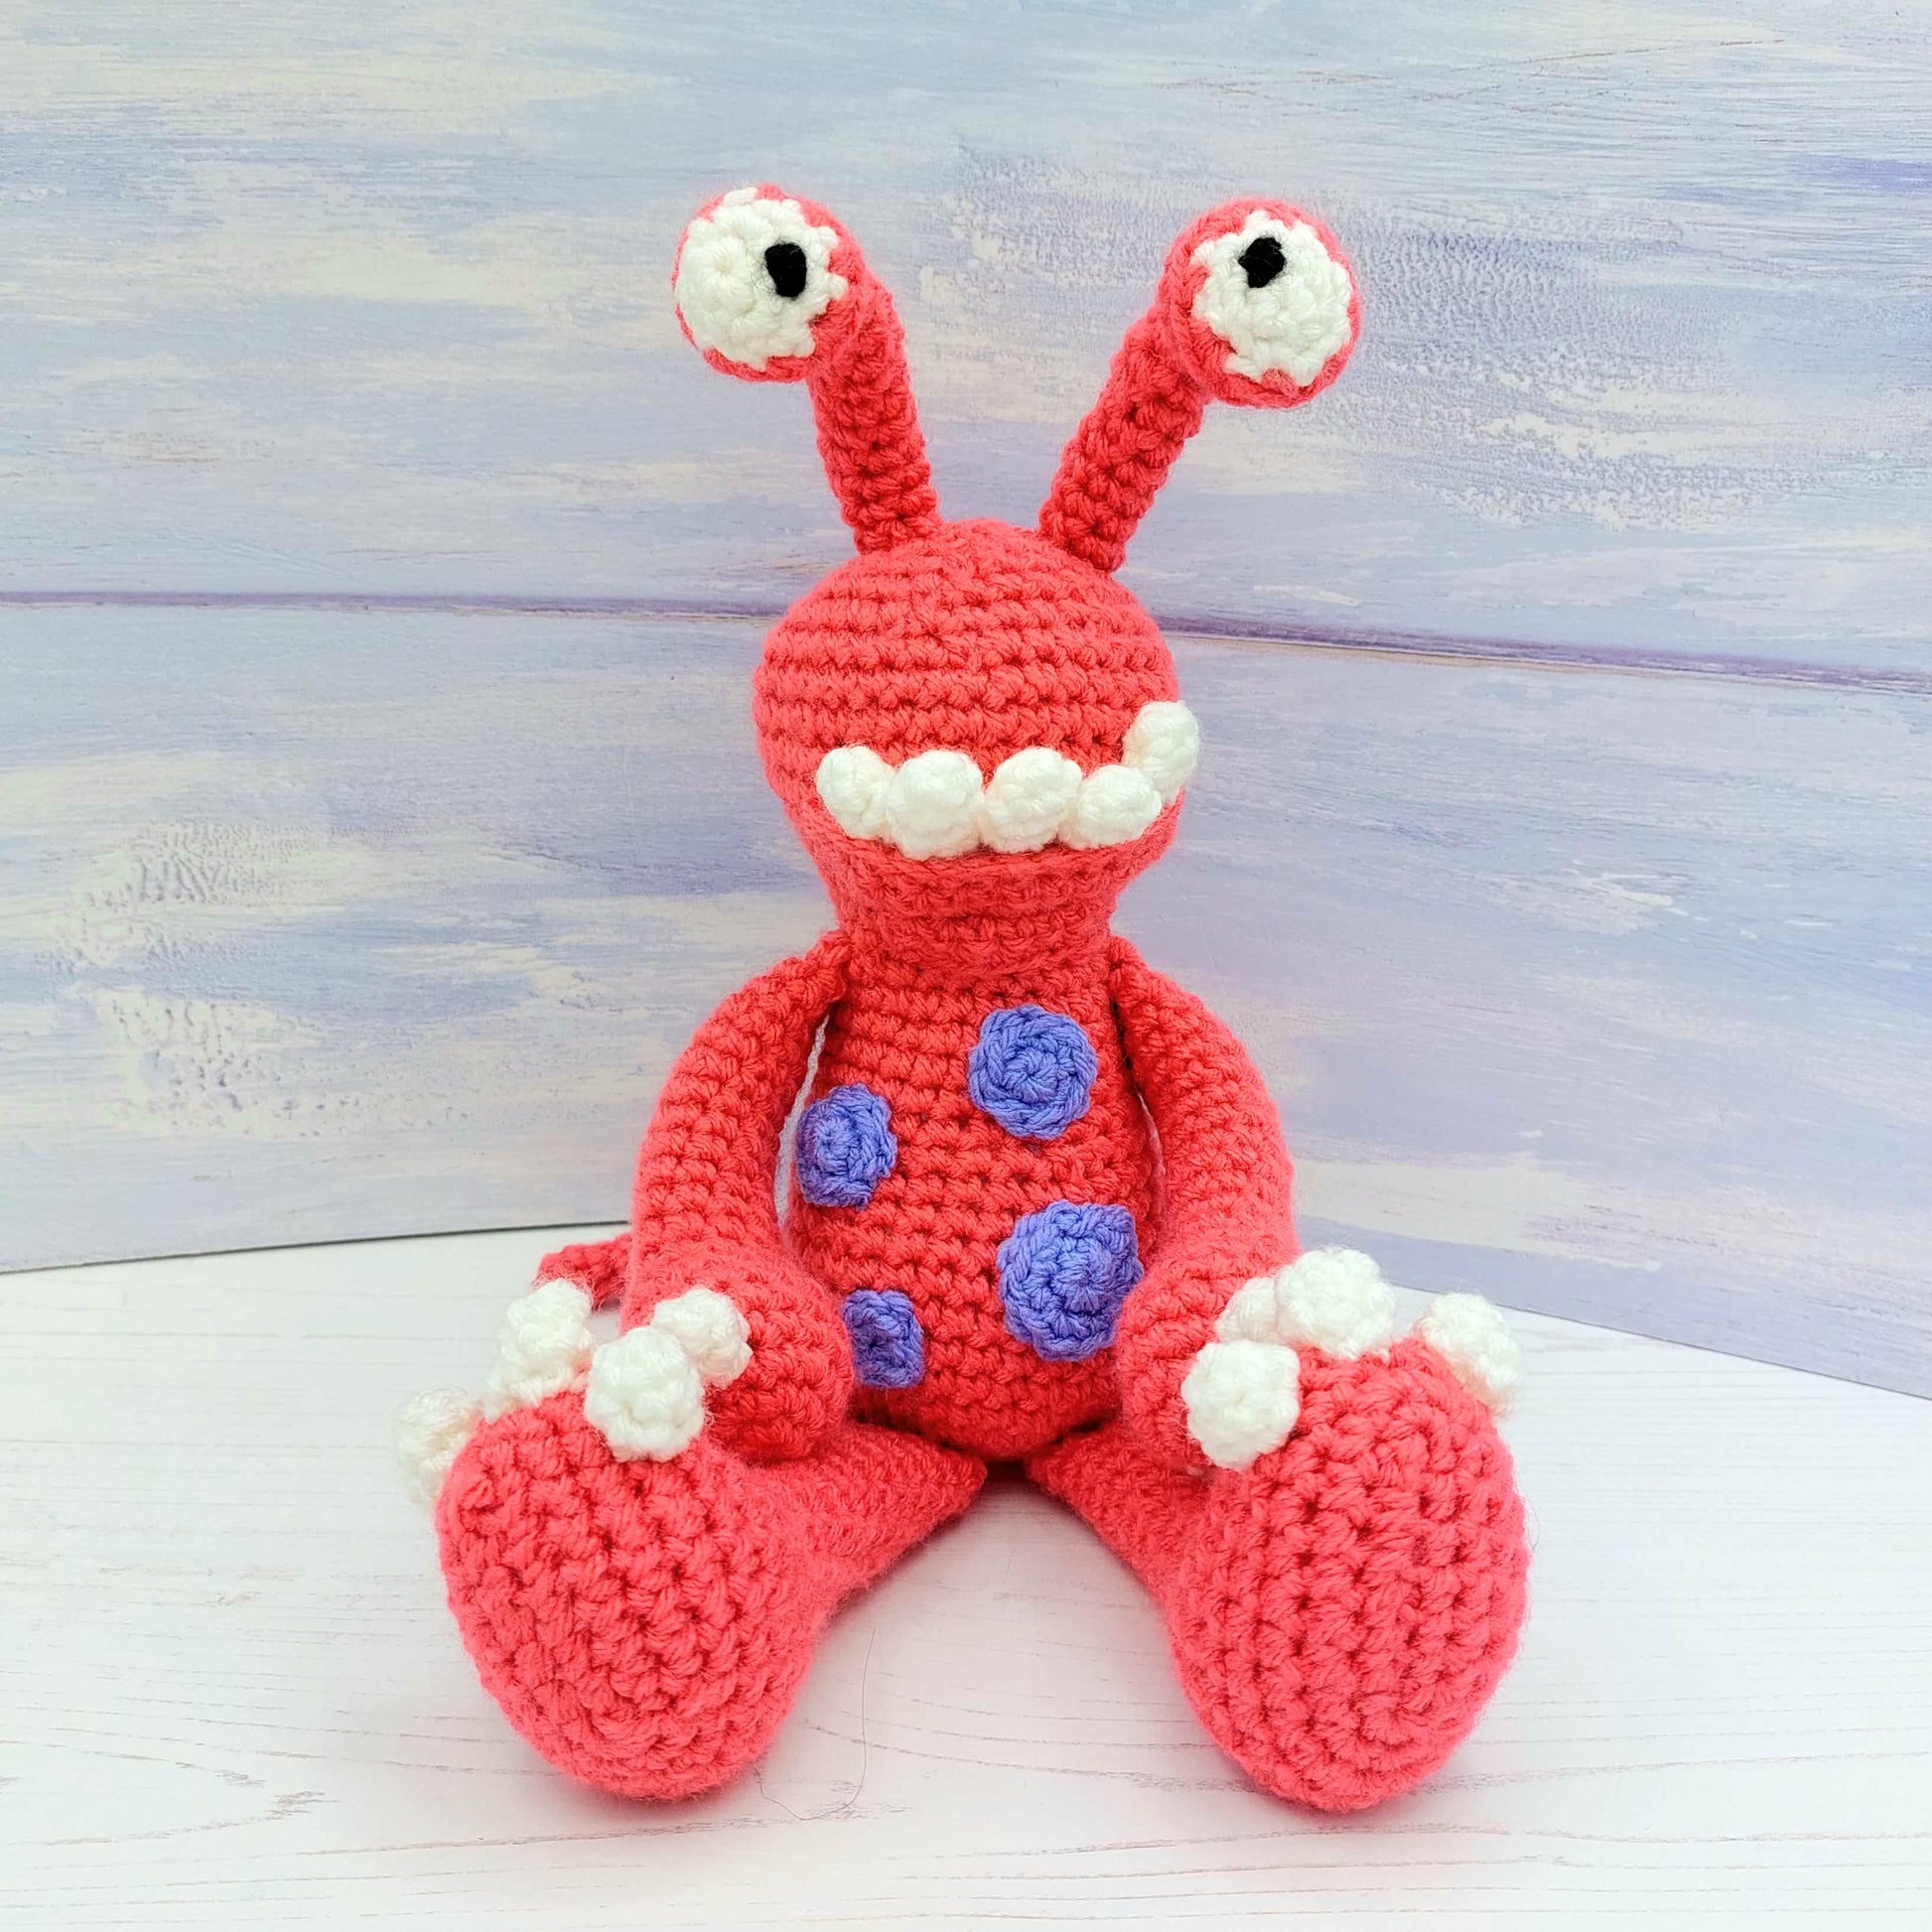 Stalk Eyed Monsters Amigurumi Crochet Pattern -  UK  Crochet  amigurumi, Crochet patterns amigurumi, Crochet monsters